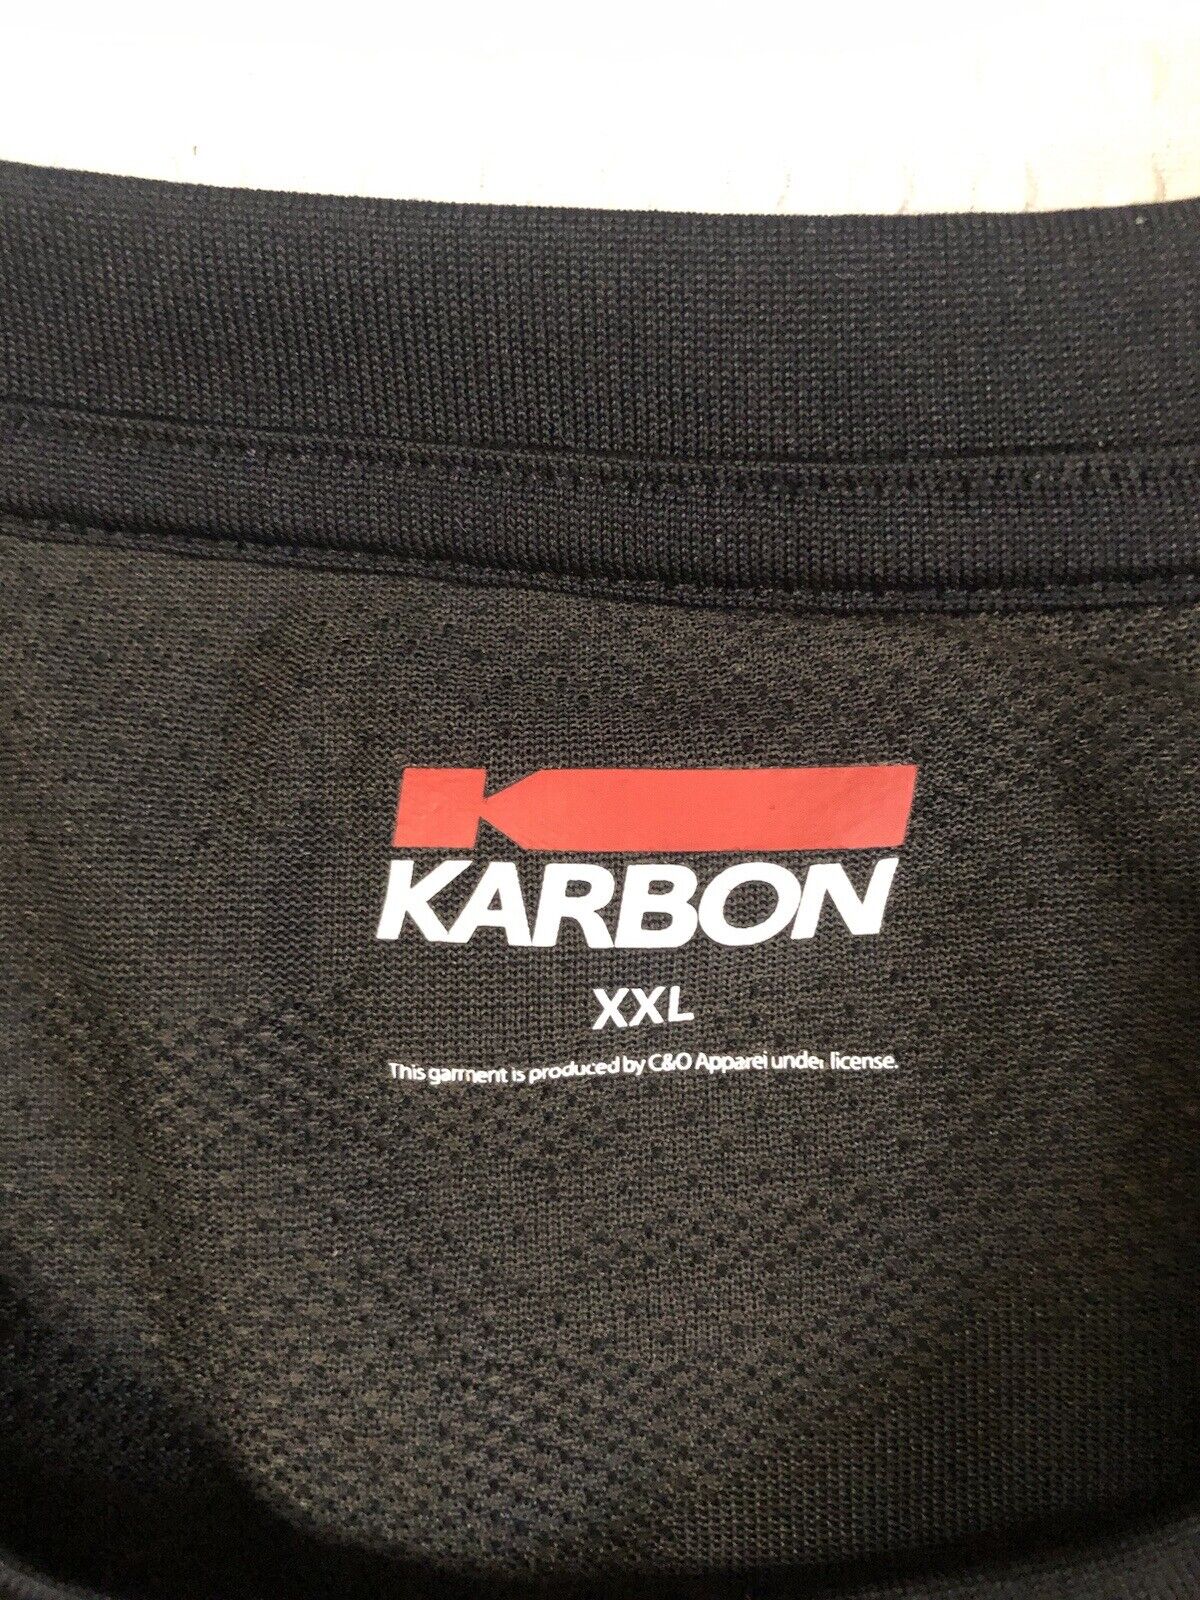 Karbon - Men’s - Quick Dry  Shirt 2XL Black Camo … - image 9